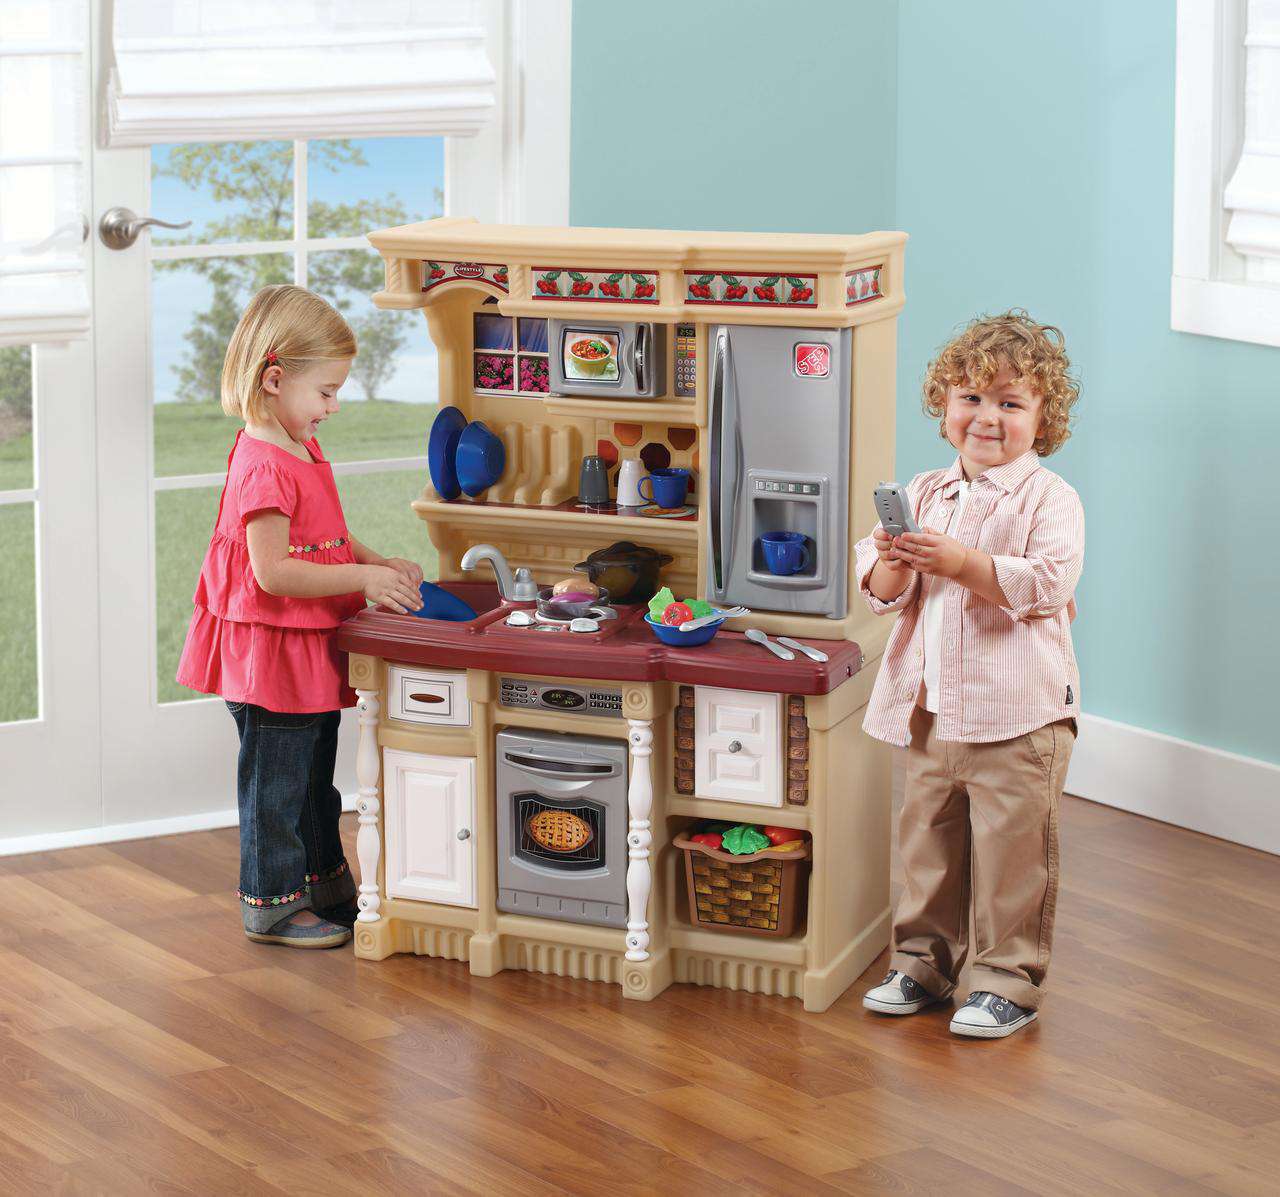 Best Child Kitchen Set - How To Determine The Best Child Kitchen Set